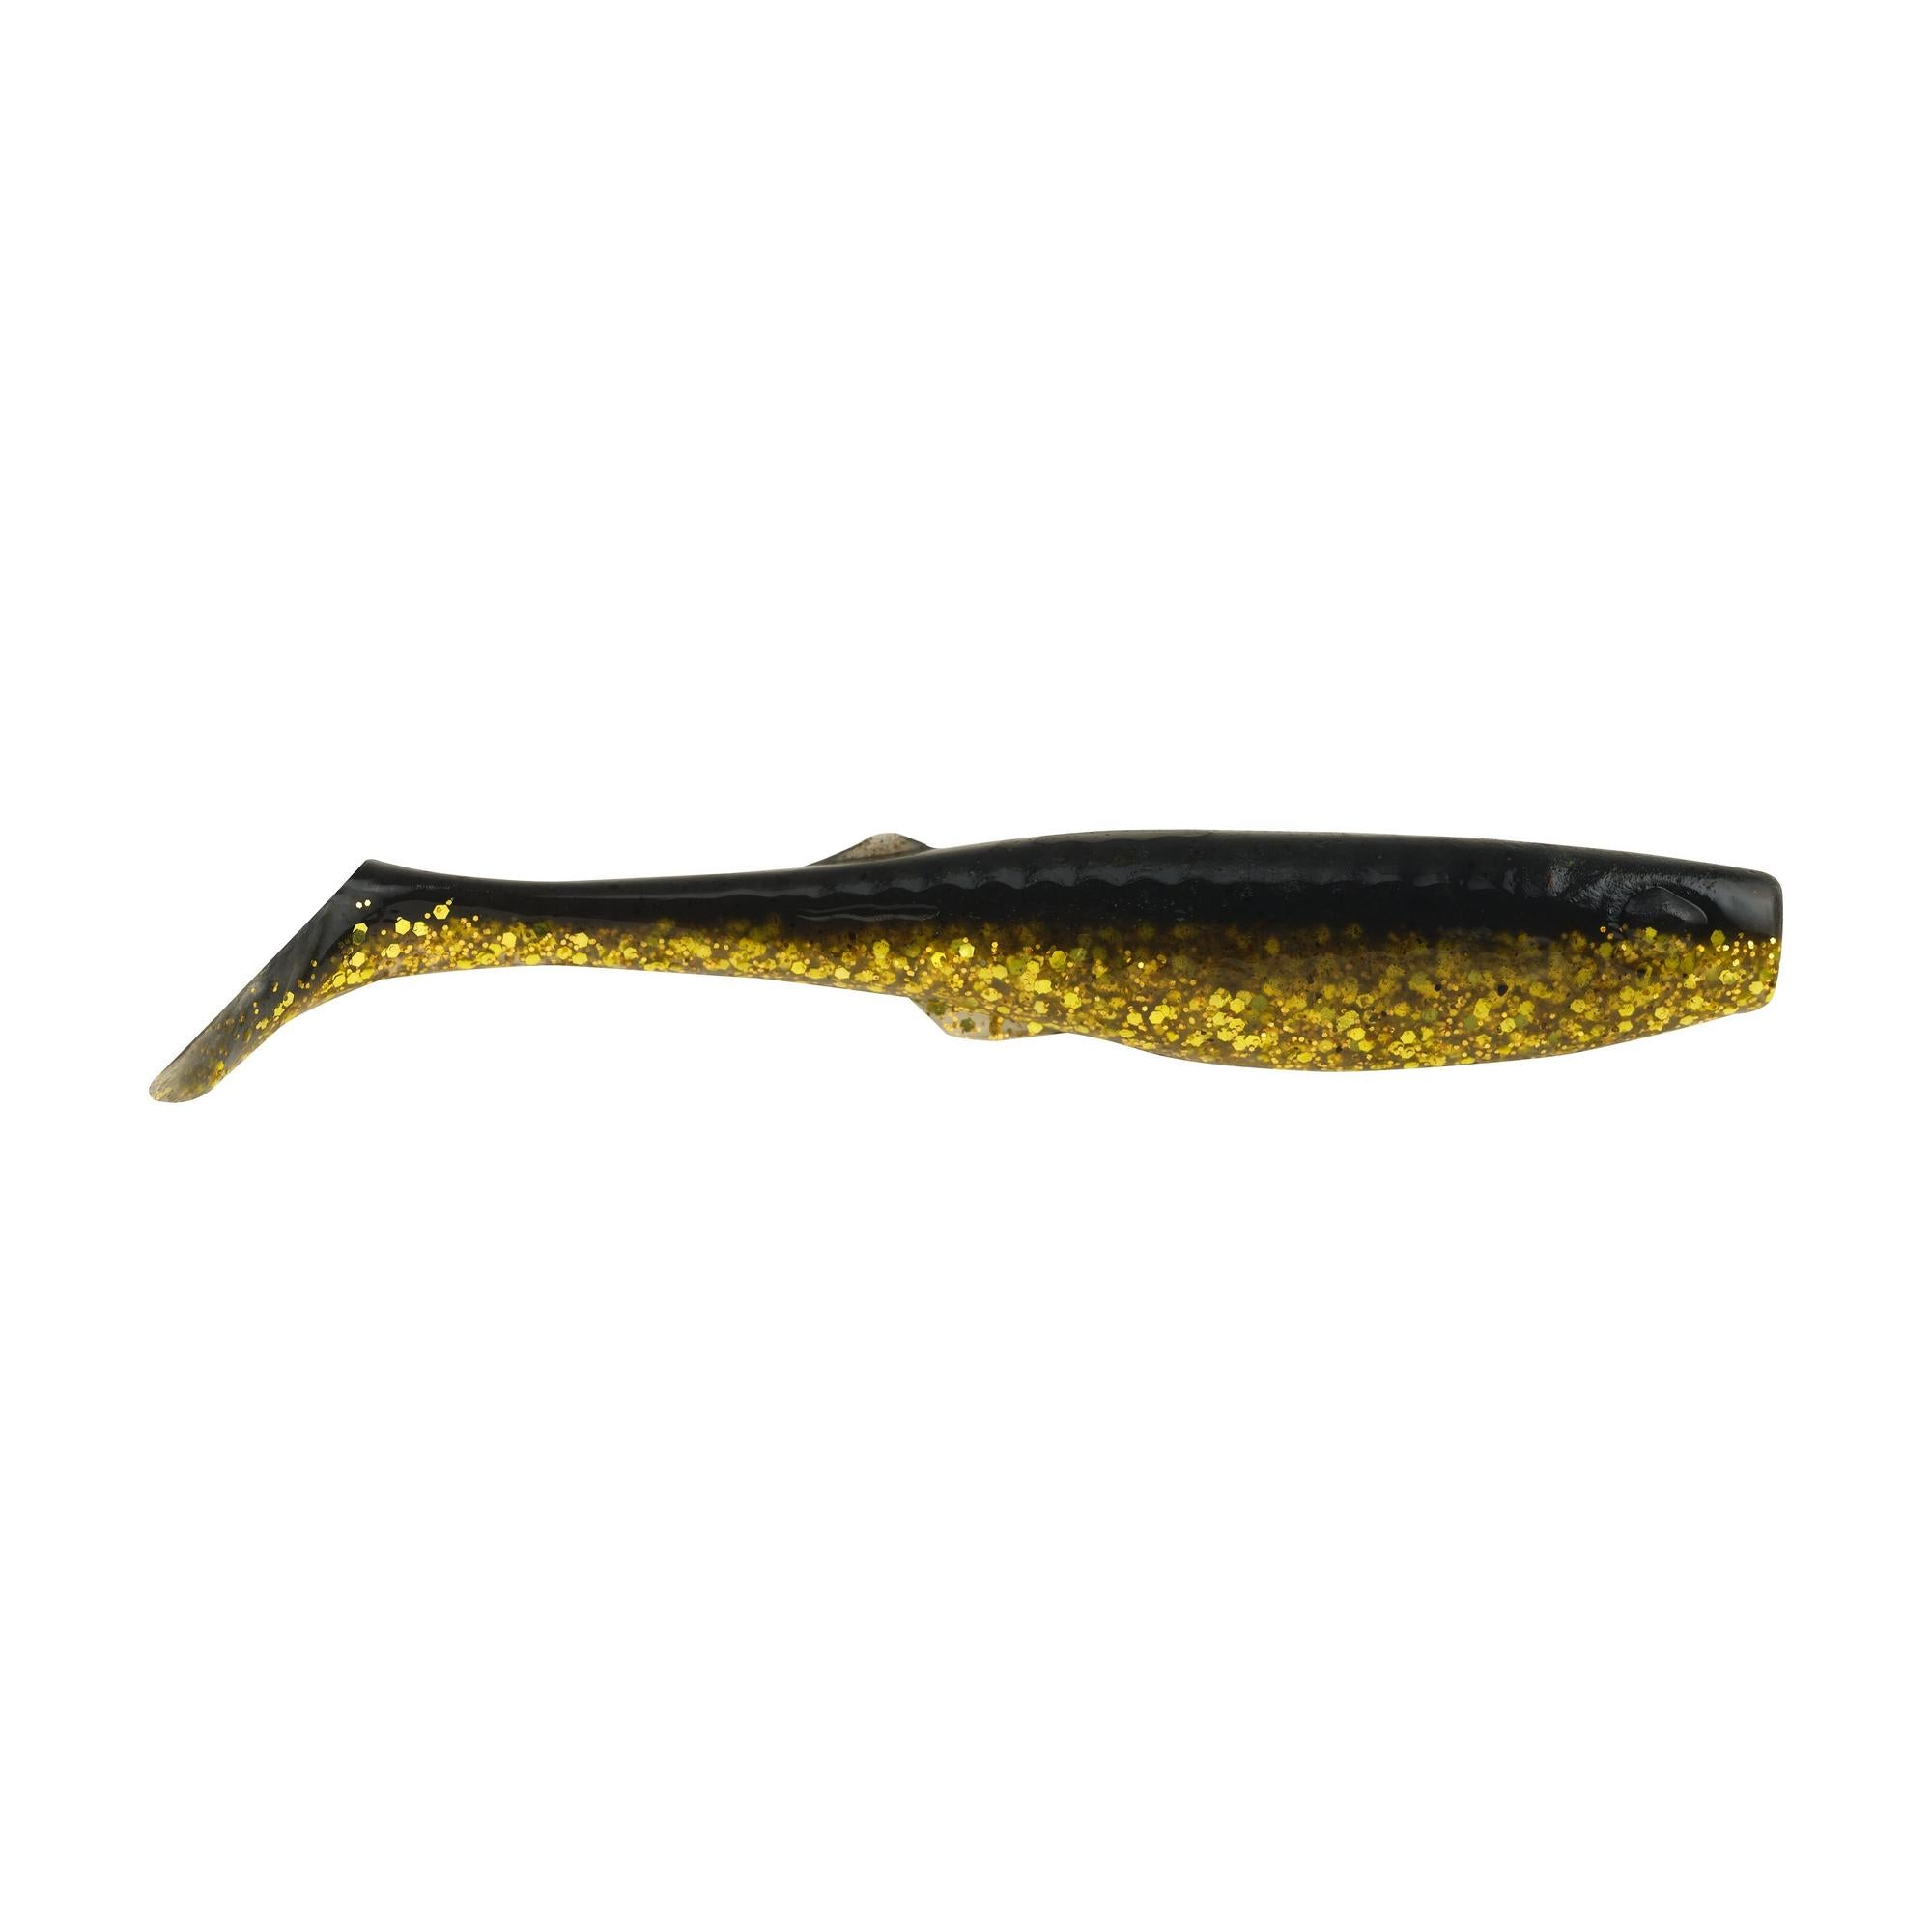 Berkley Gulp Saltwater Paddleshad 4 Black Gold 1520440